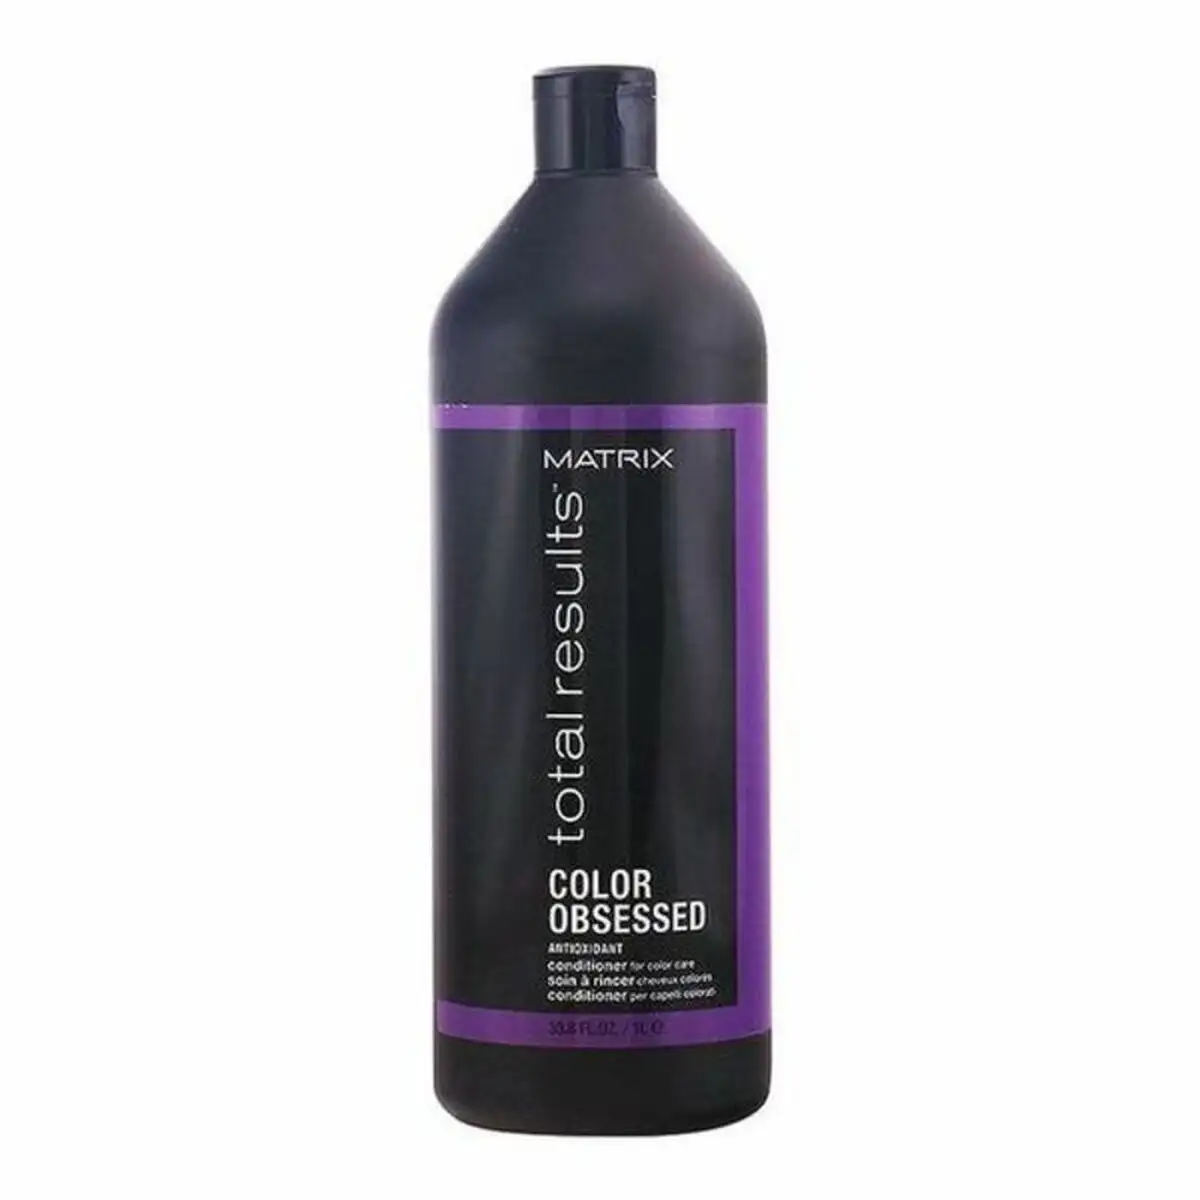 Apres shampooing total results color obsessed matrix_4805. DIAYTAR SENEGAL - Où Choisir Devient une Expérience Personnalisée. Explorez notre boutique en ligne pour découvrir des produits qui s'adaptent à votre style et à votre essence.